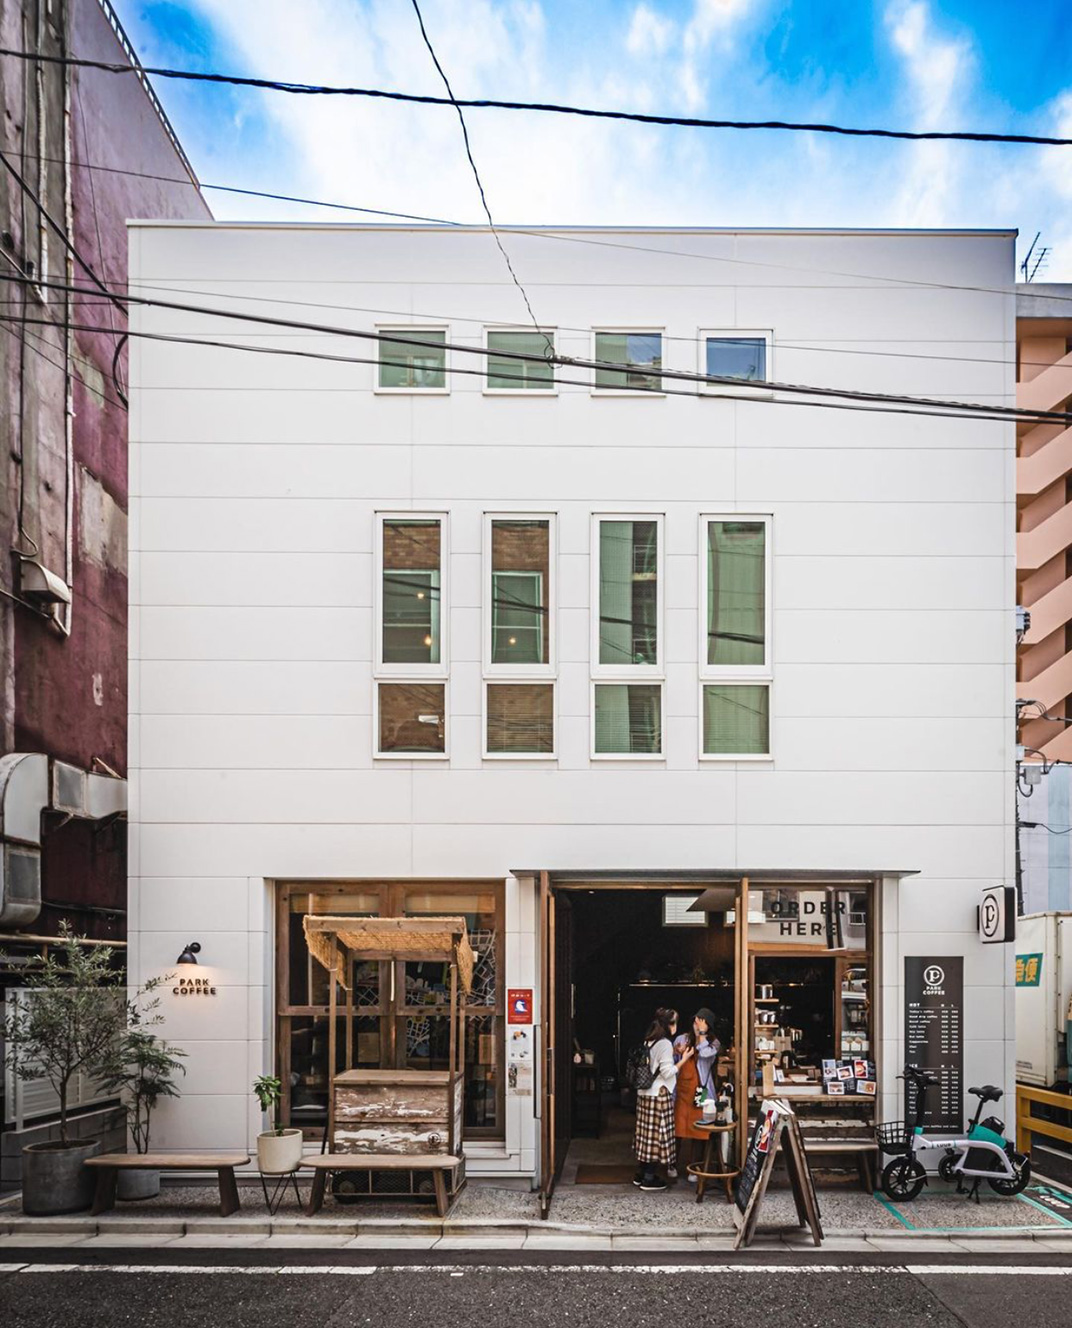 市井风格咖啡店 日本 东京 上海 咖啡店 市井 橱窗 档口 复古 logo设计 vi设计 空间设计